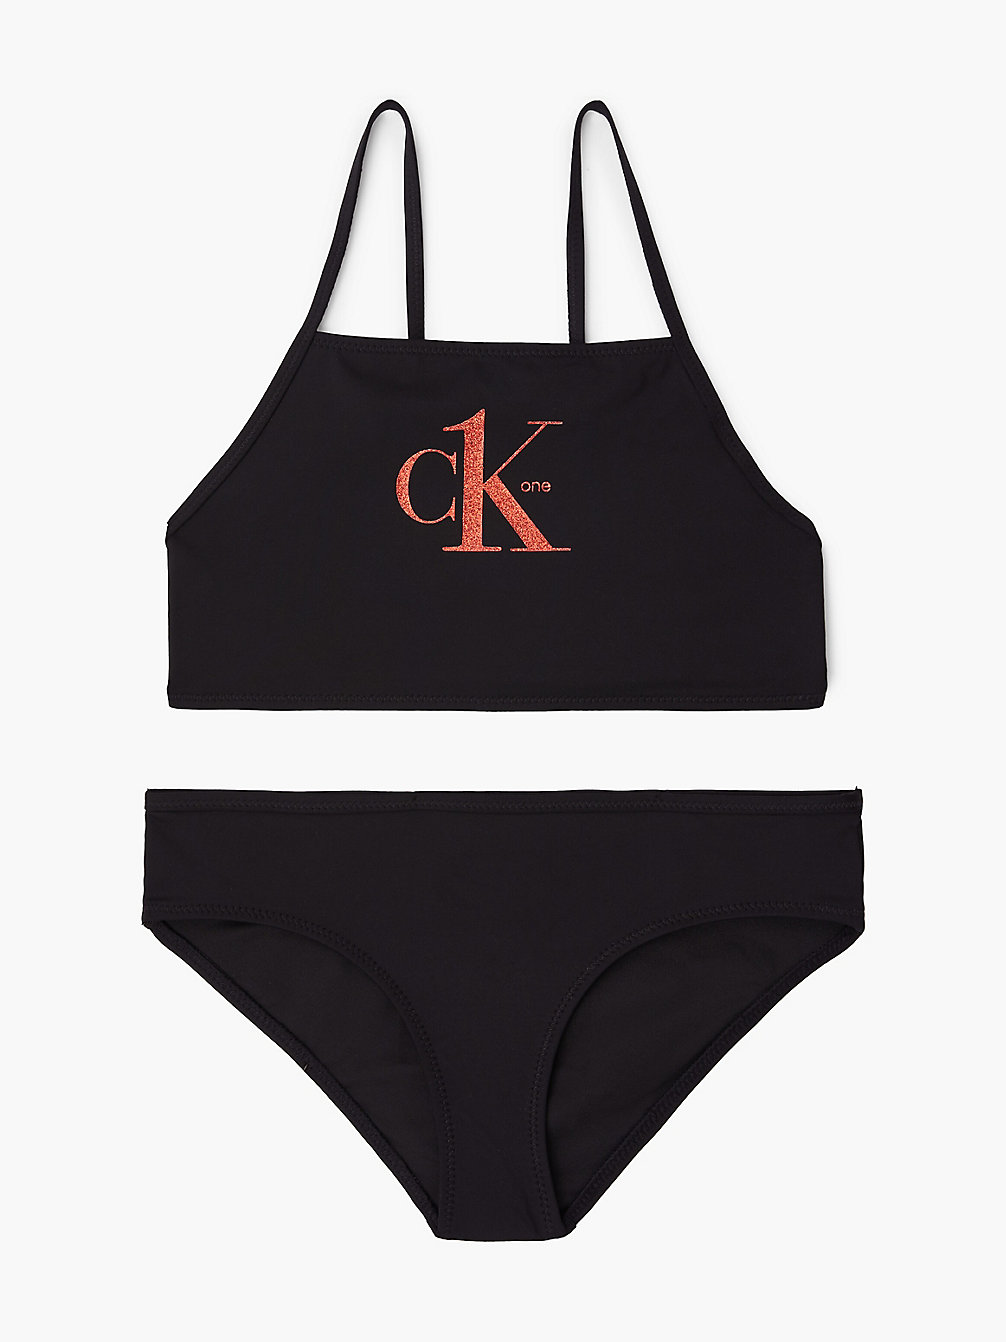 PVH BLACK > Meisjesbralette Bikini - Y2ck One > undefined girls - Calvin Klein